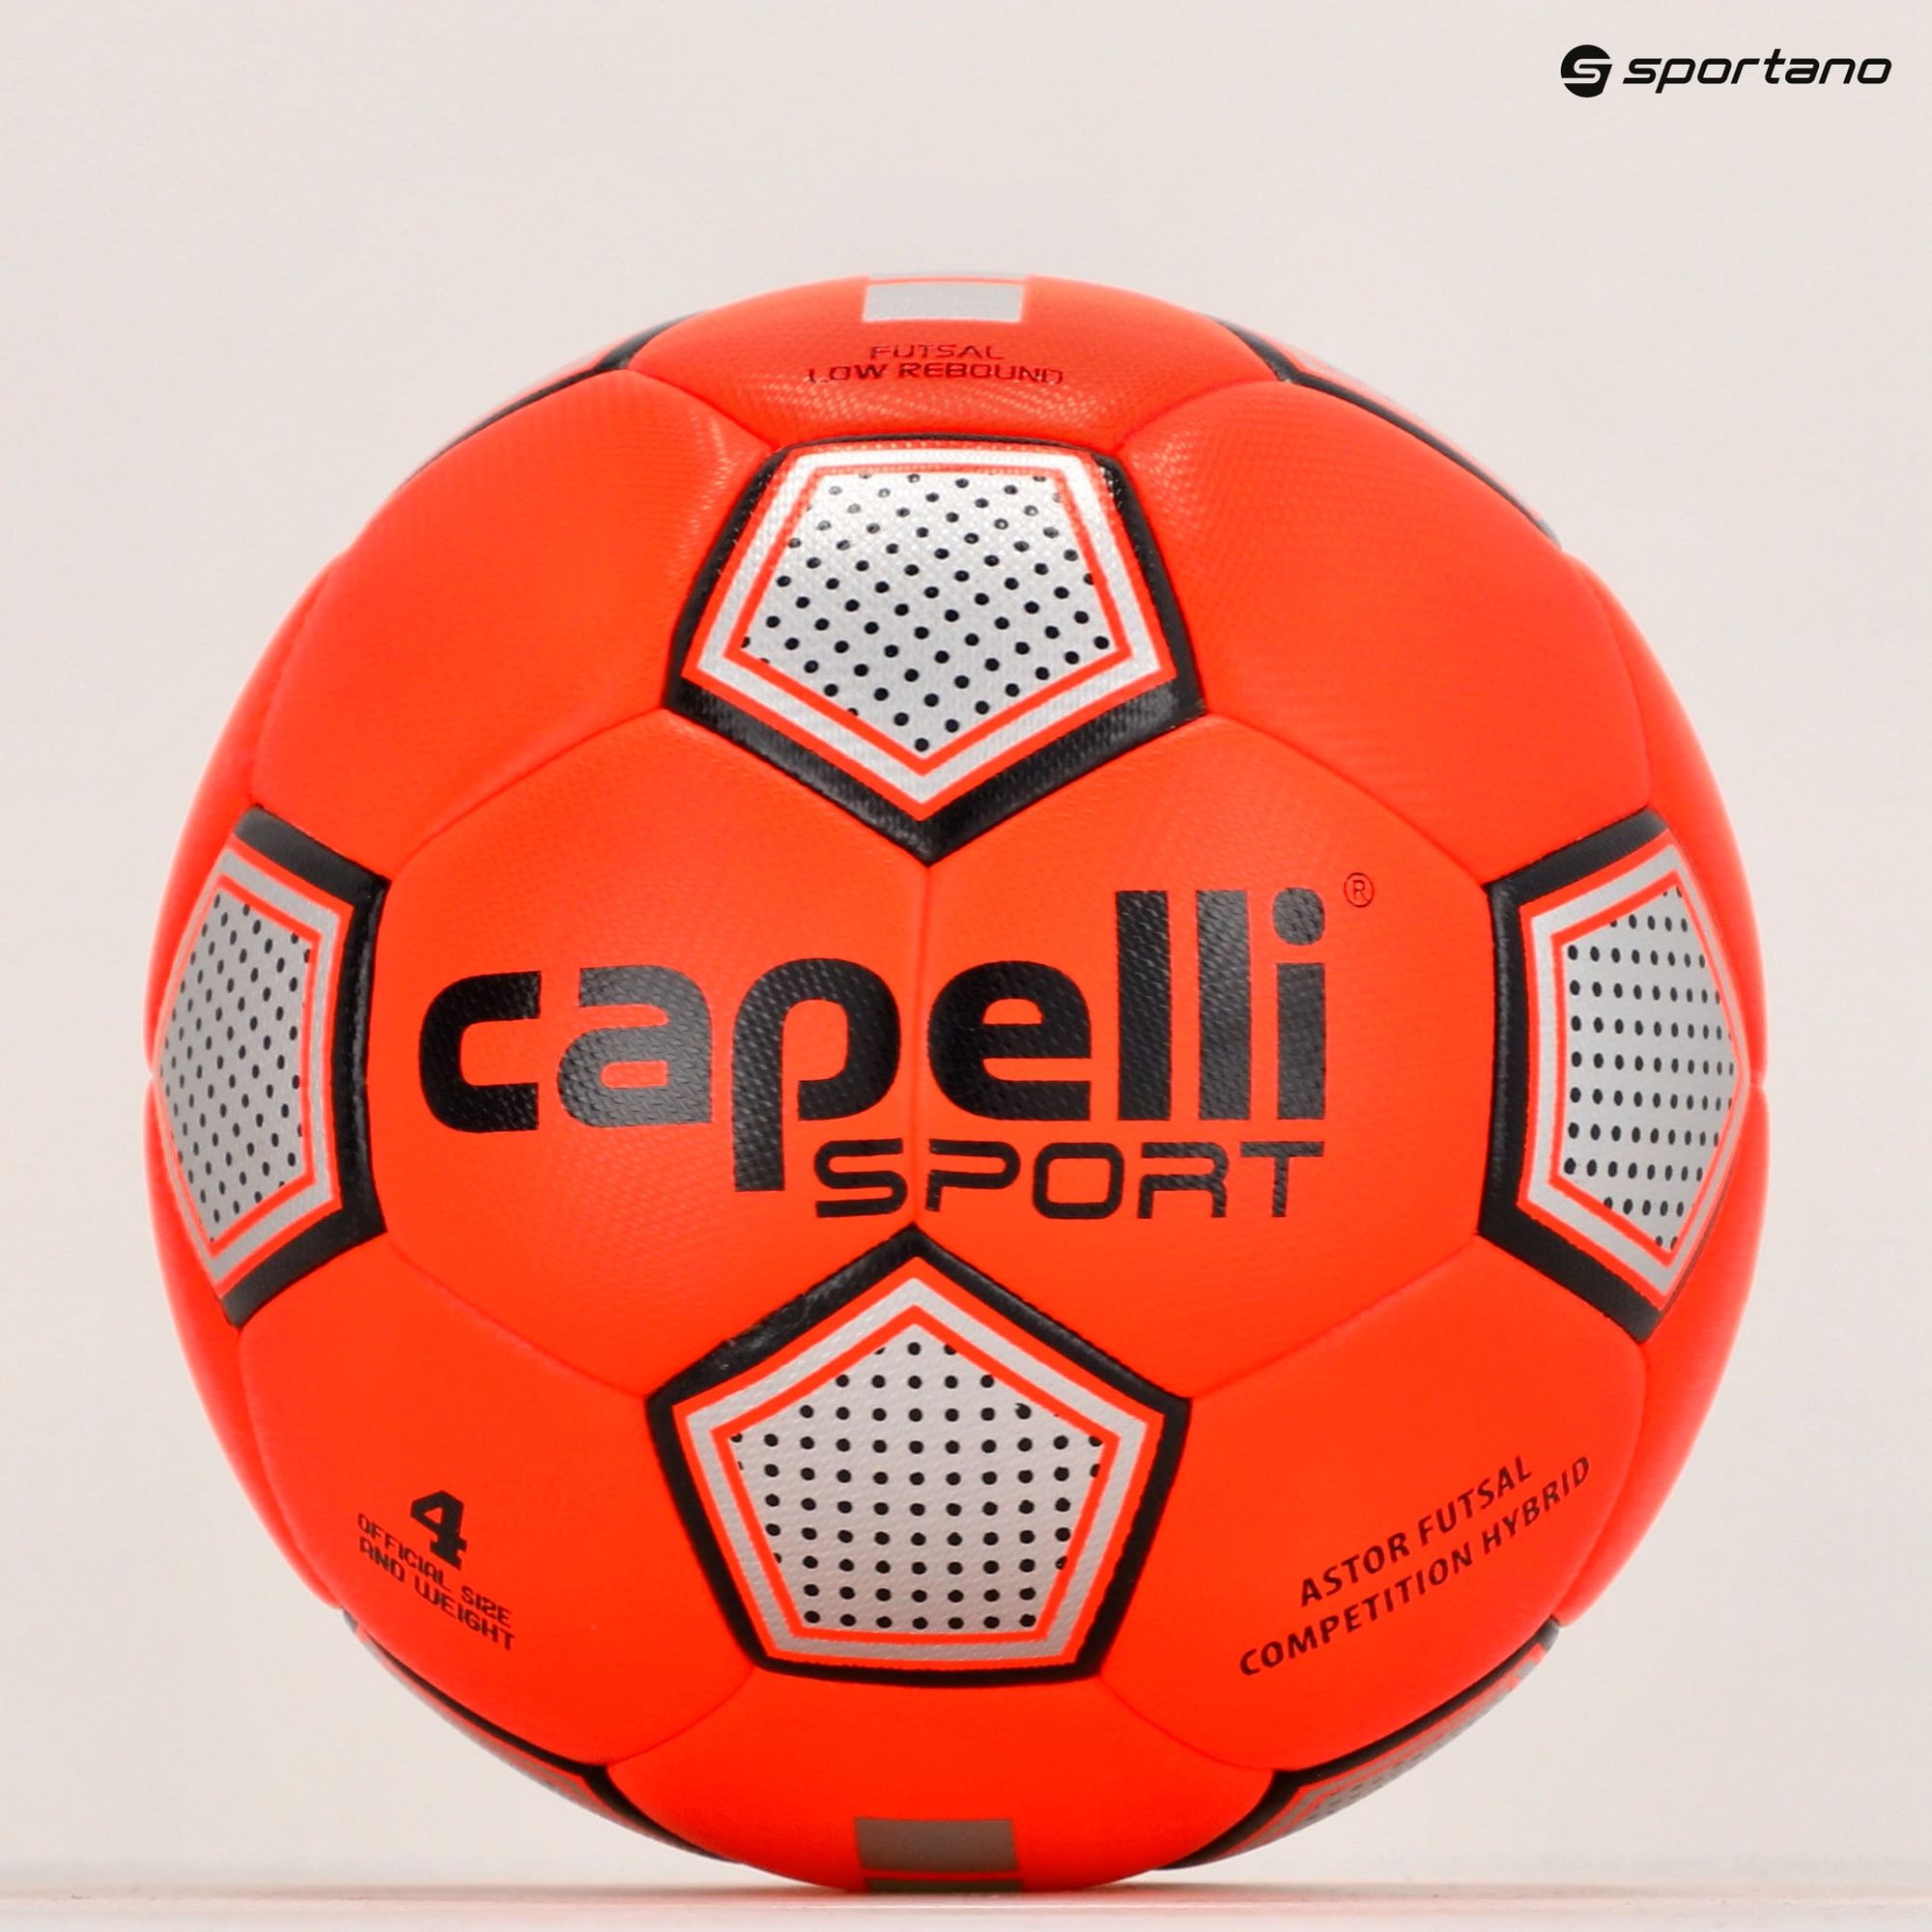 Piłka do piłki nożnej Capelli Astor Futsal Competition Elite AGE-1210 rozmiar 4 zdjęcie nr 2